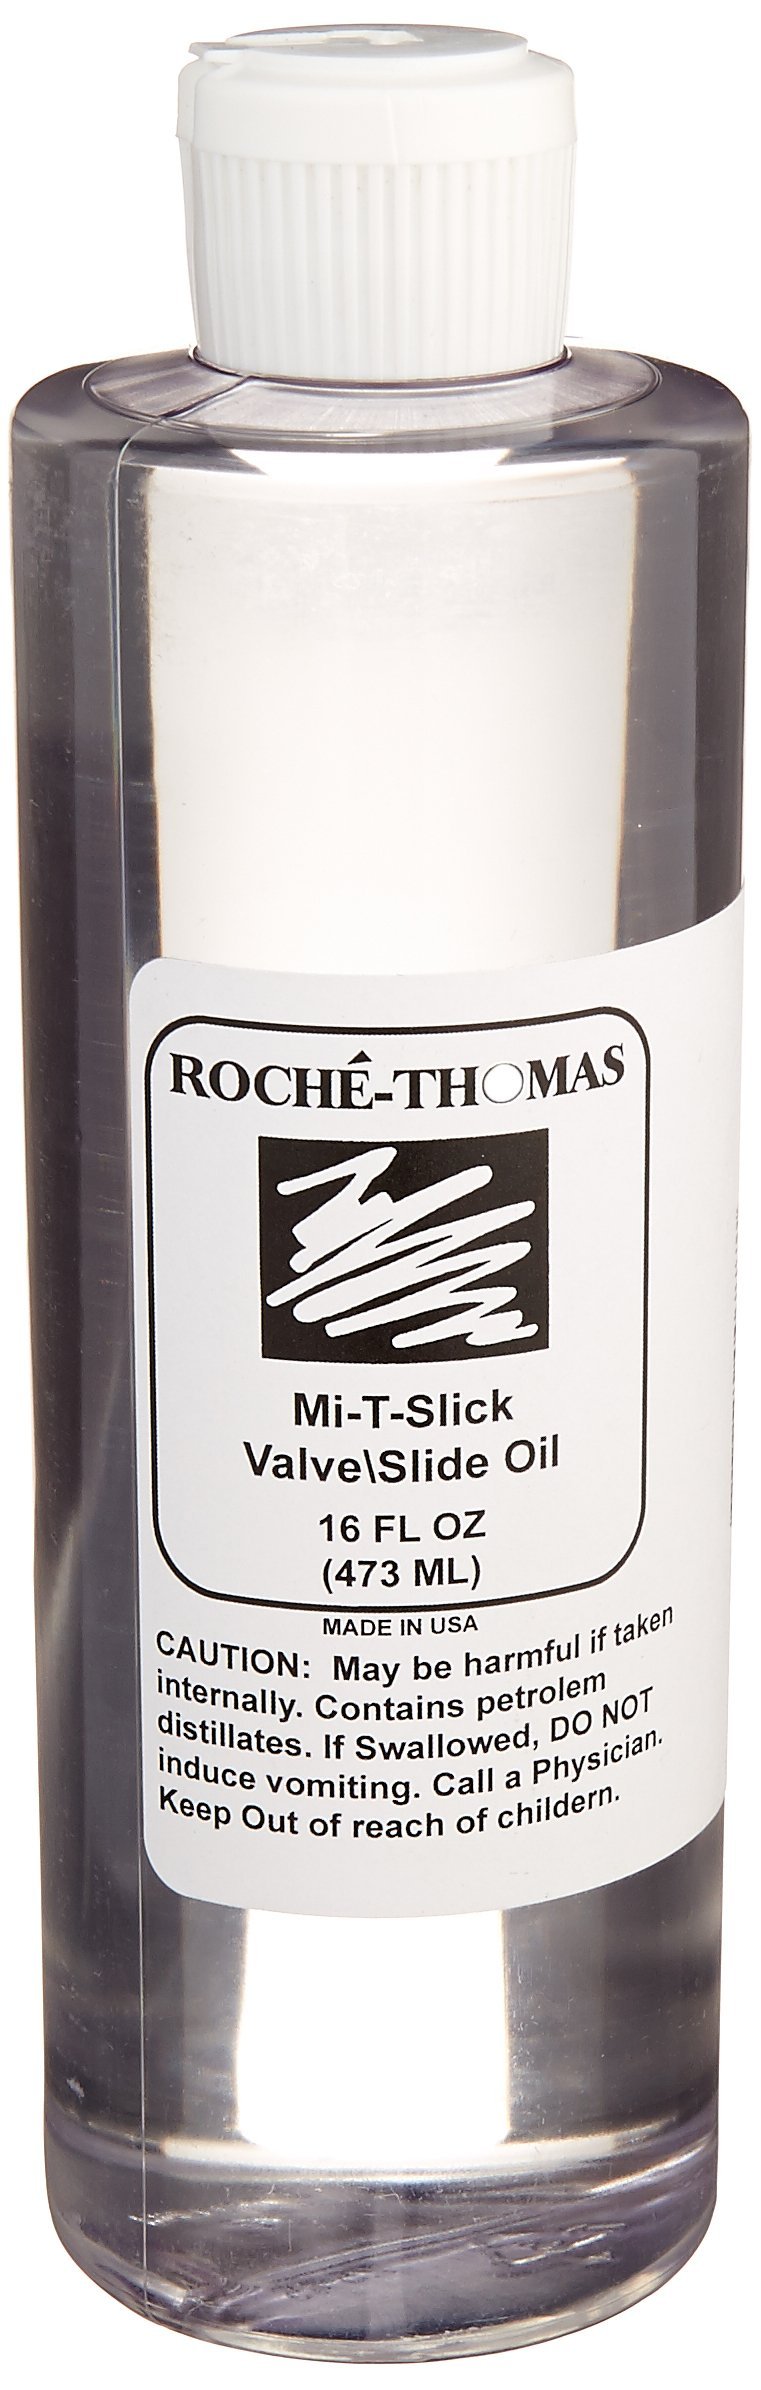 Roche Thomas RT28 Roche Thomas Slick Valve/Slide Oil Refill